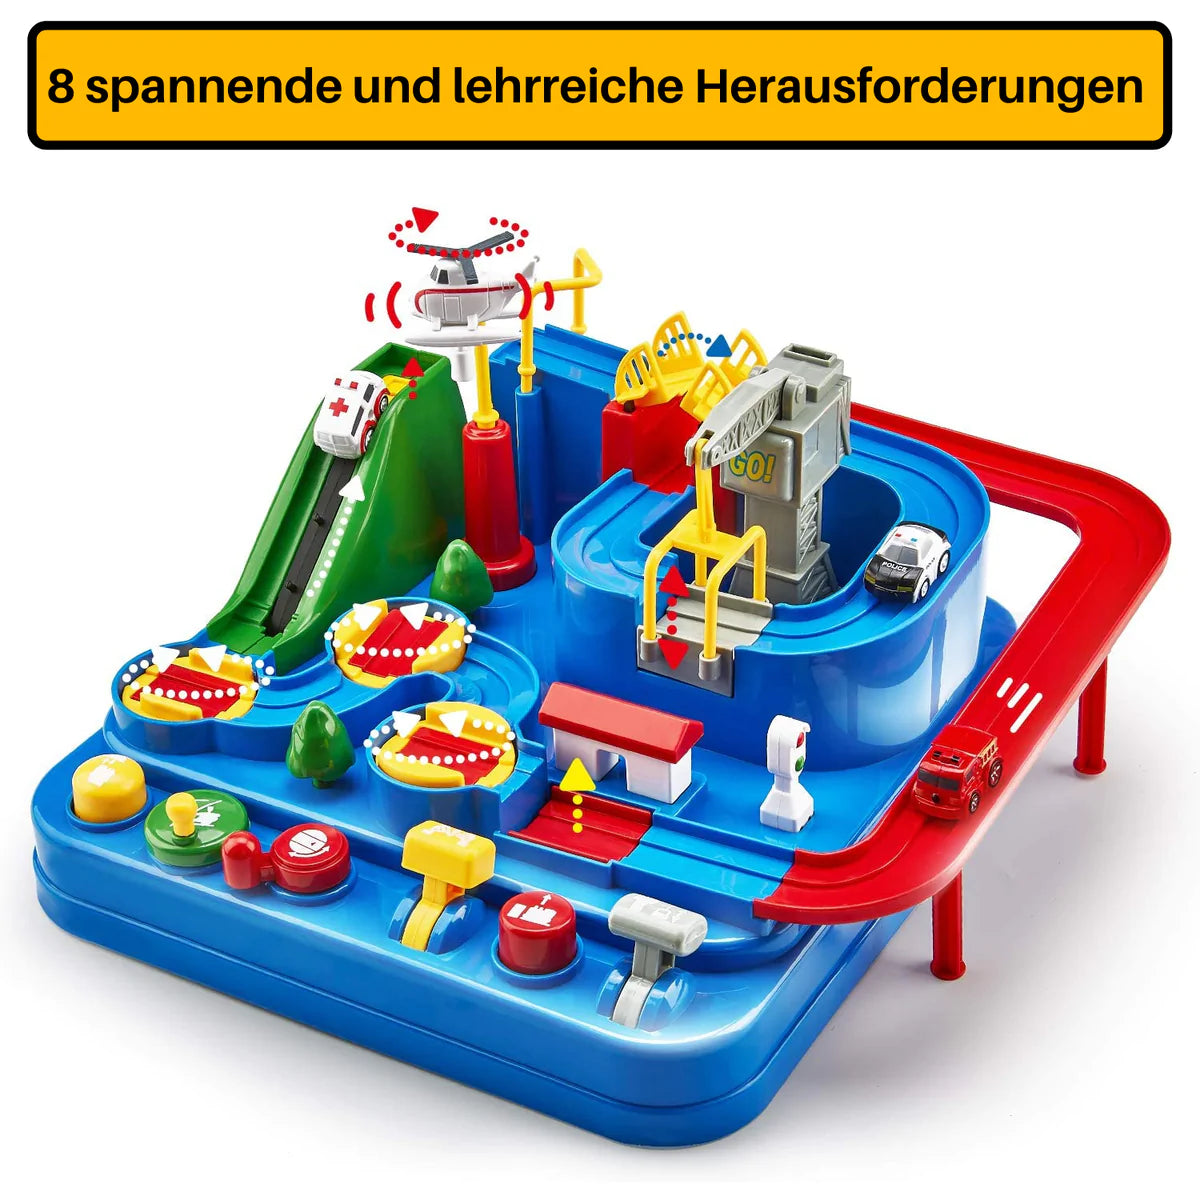 Montessori Autorennbahn